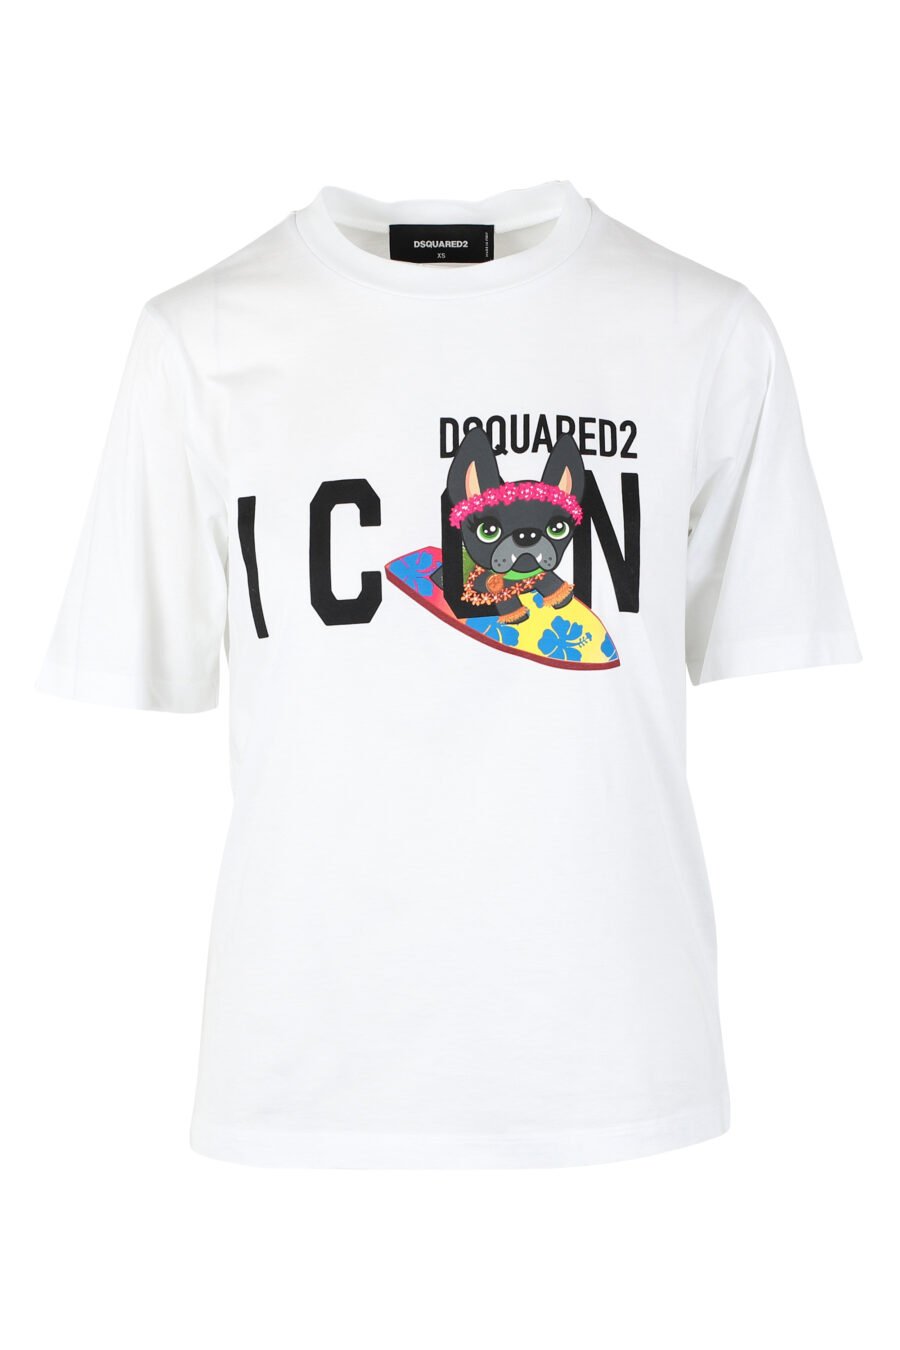 T-shirt branca com o logótipo "icon" e um cão surfista - IMG 9787